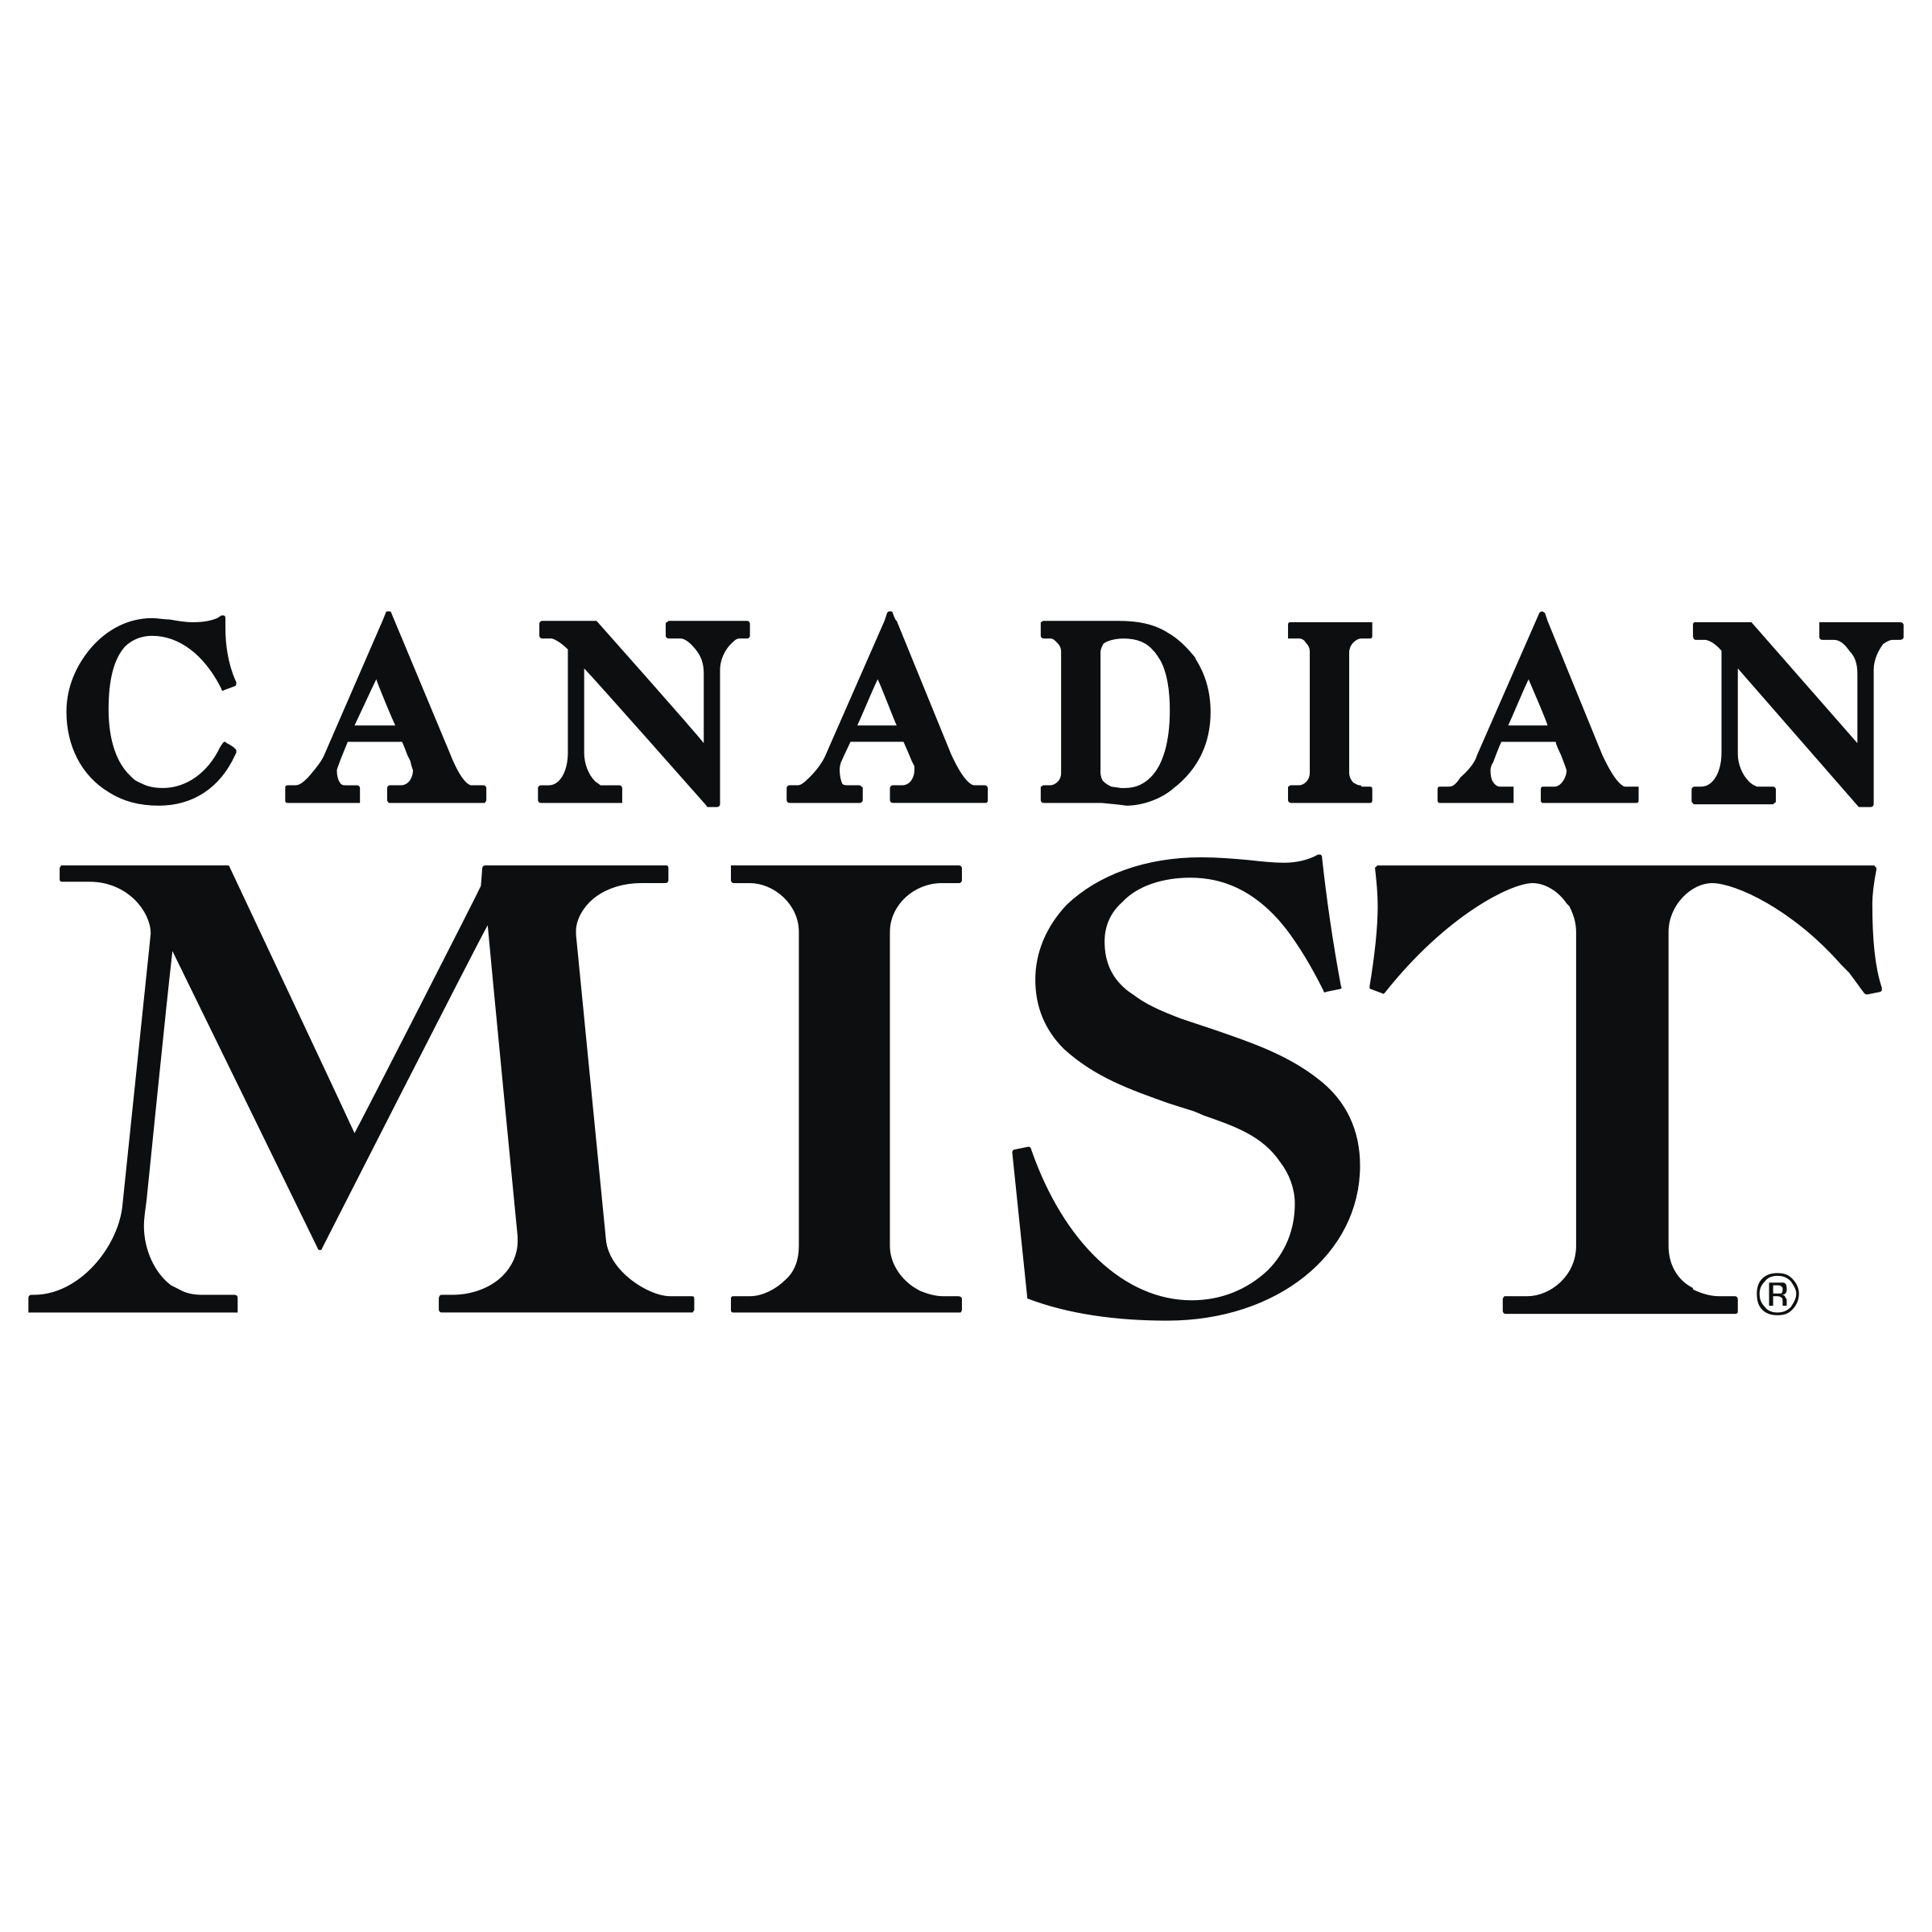 Mist Logo - Canadian Mist Logo PNG Transparent & SVG Vector